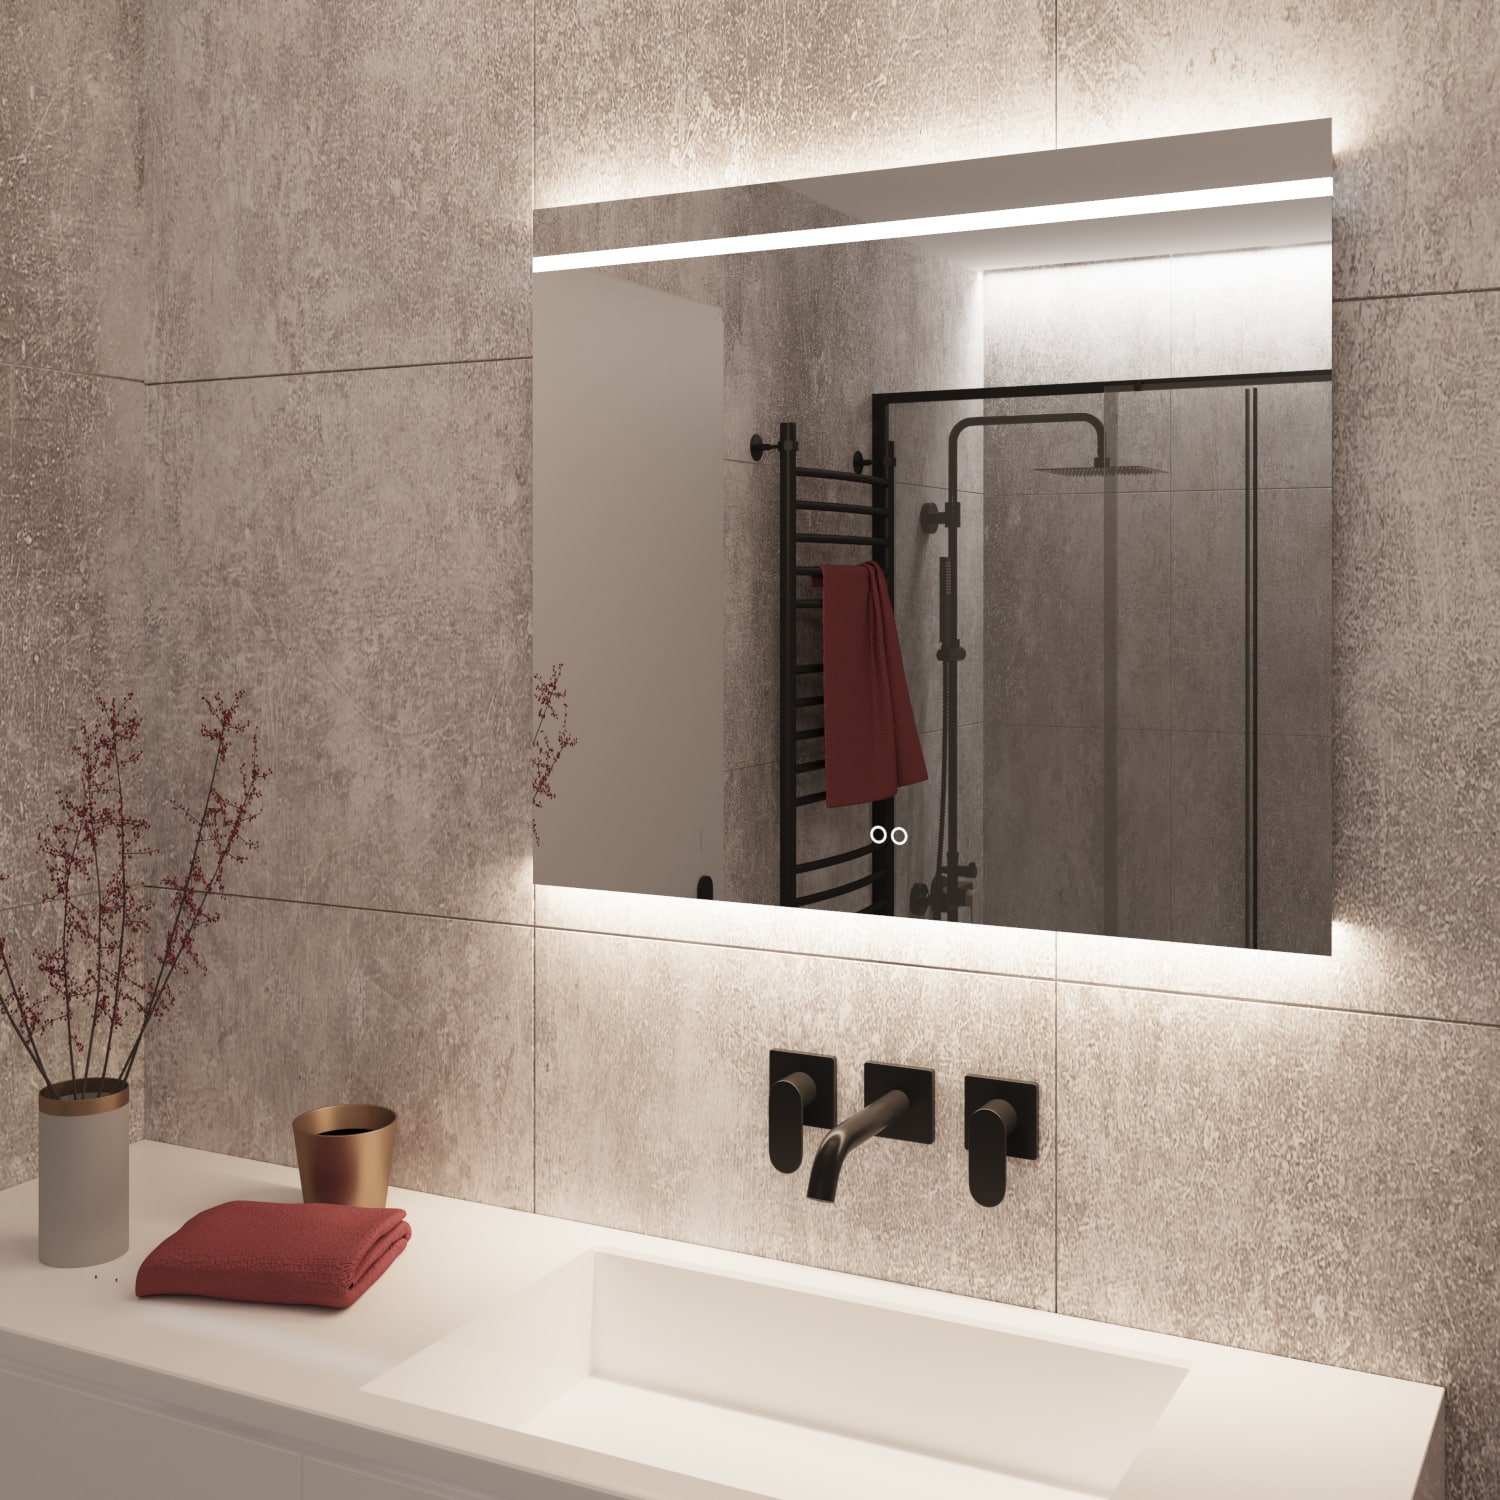 De geïntegreerde spiegelverwarming voorkomt dat er condens op de spiegel komt na bv het douchen